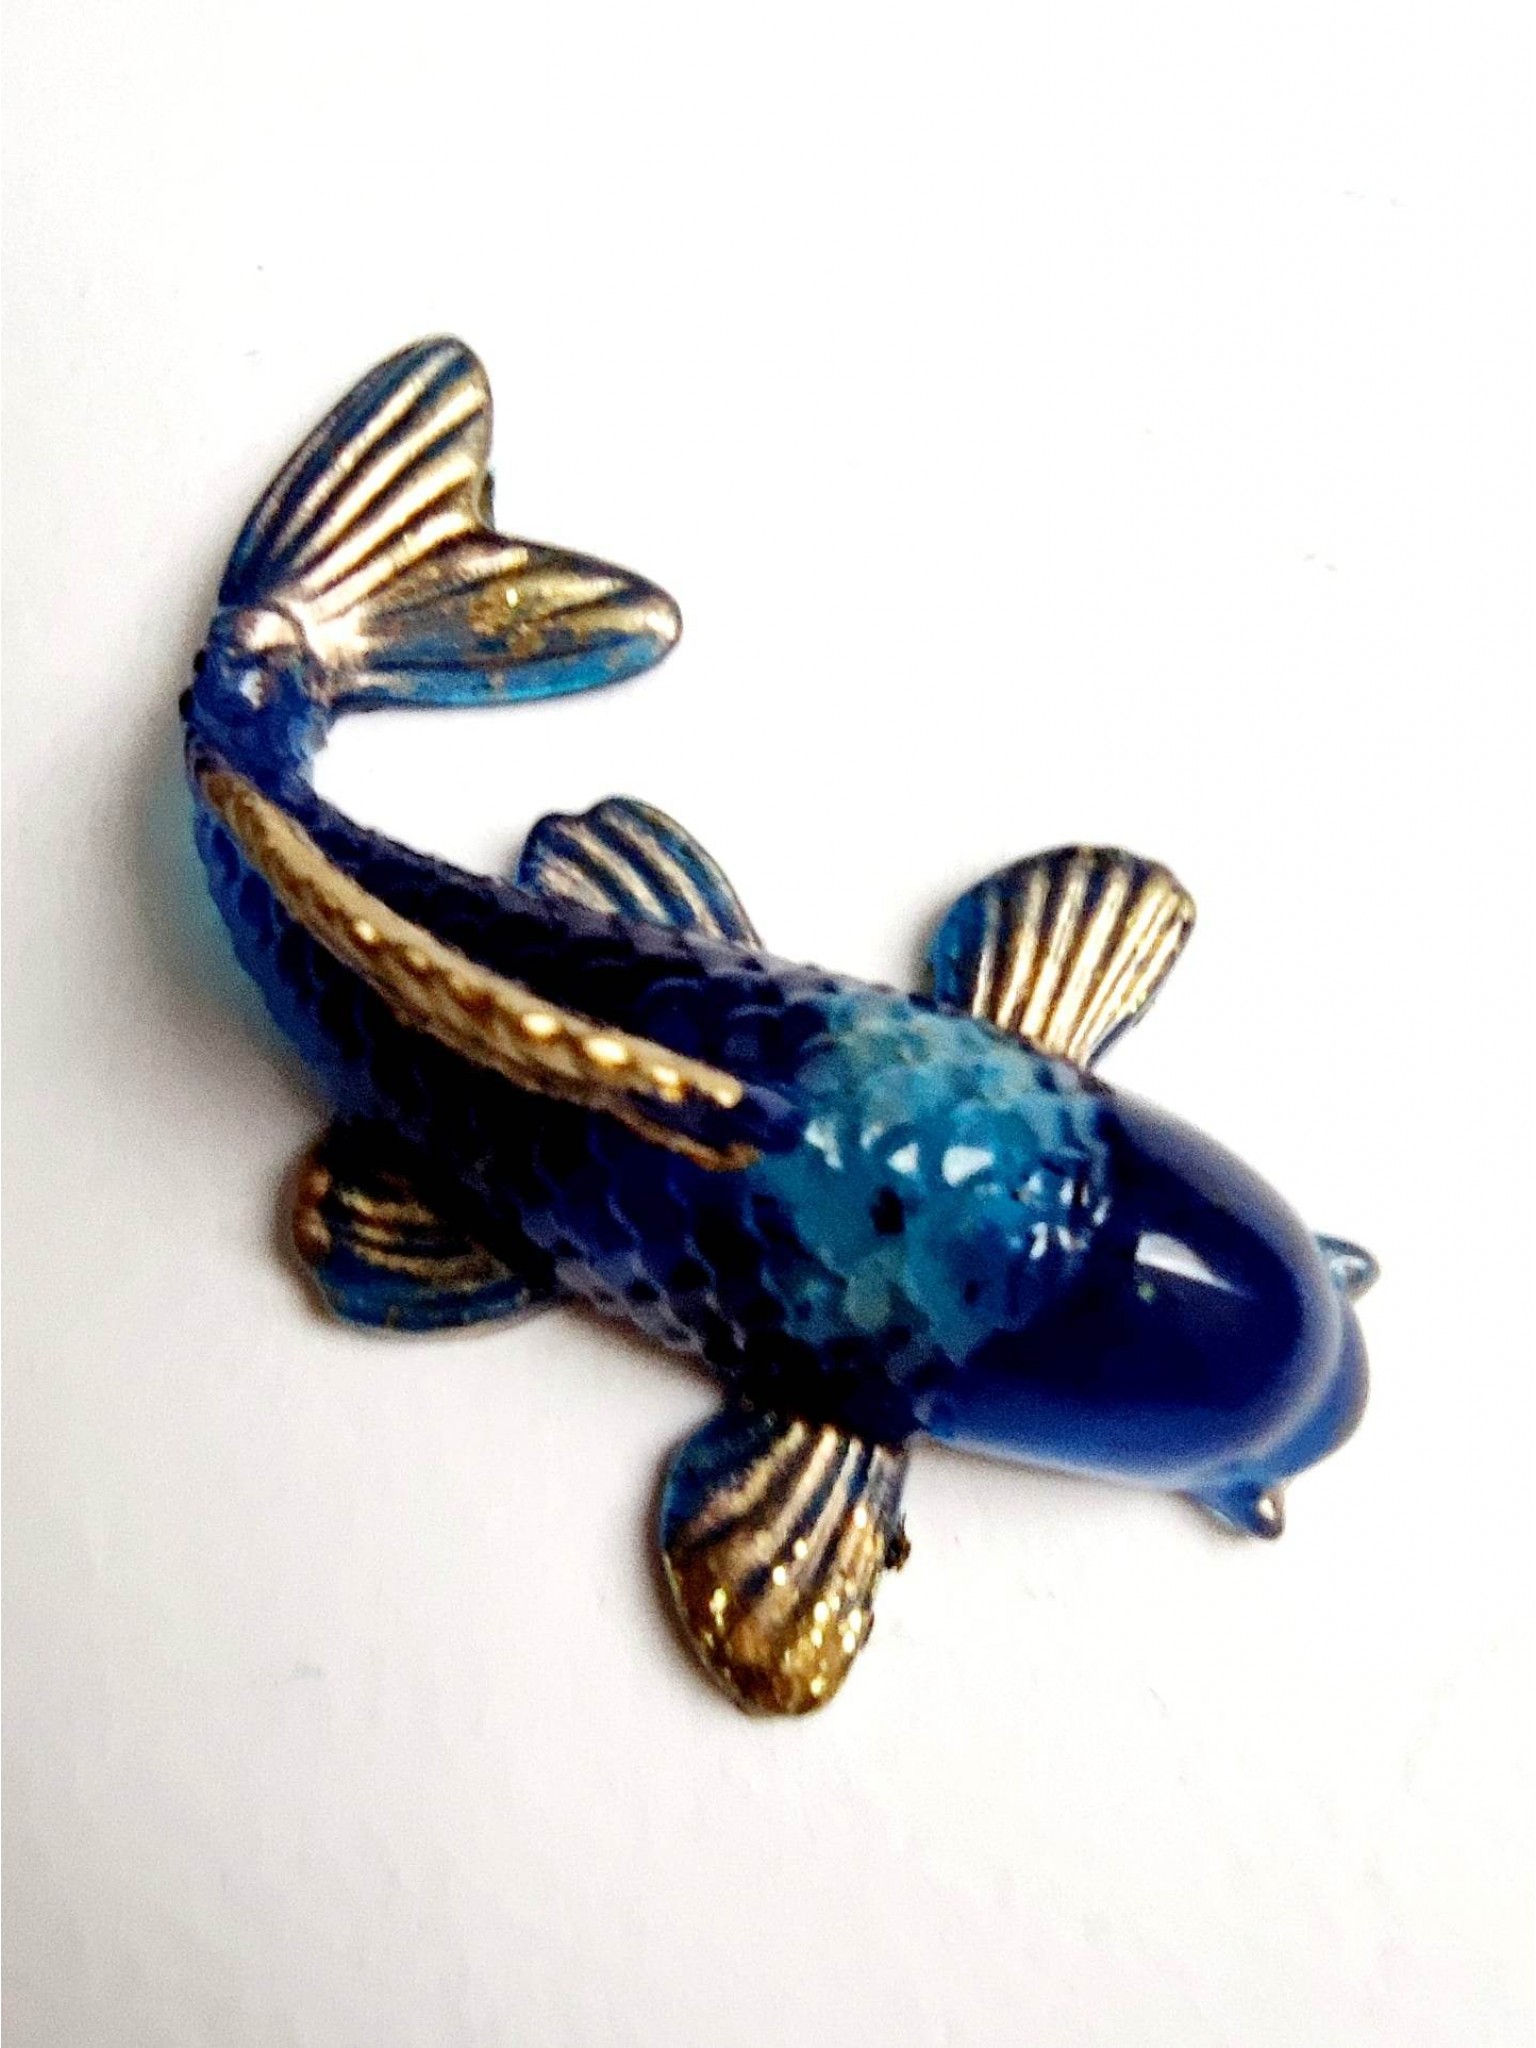 Feng shui talisman pro přilákání harmonie a pozitivní energie - Koi rybka s Lapis lazuli